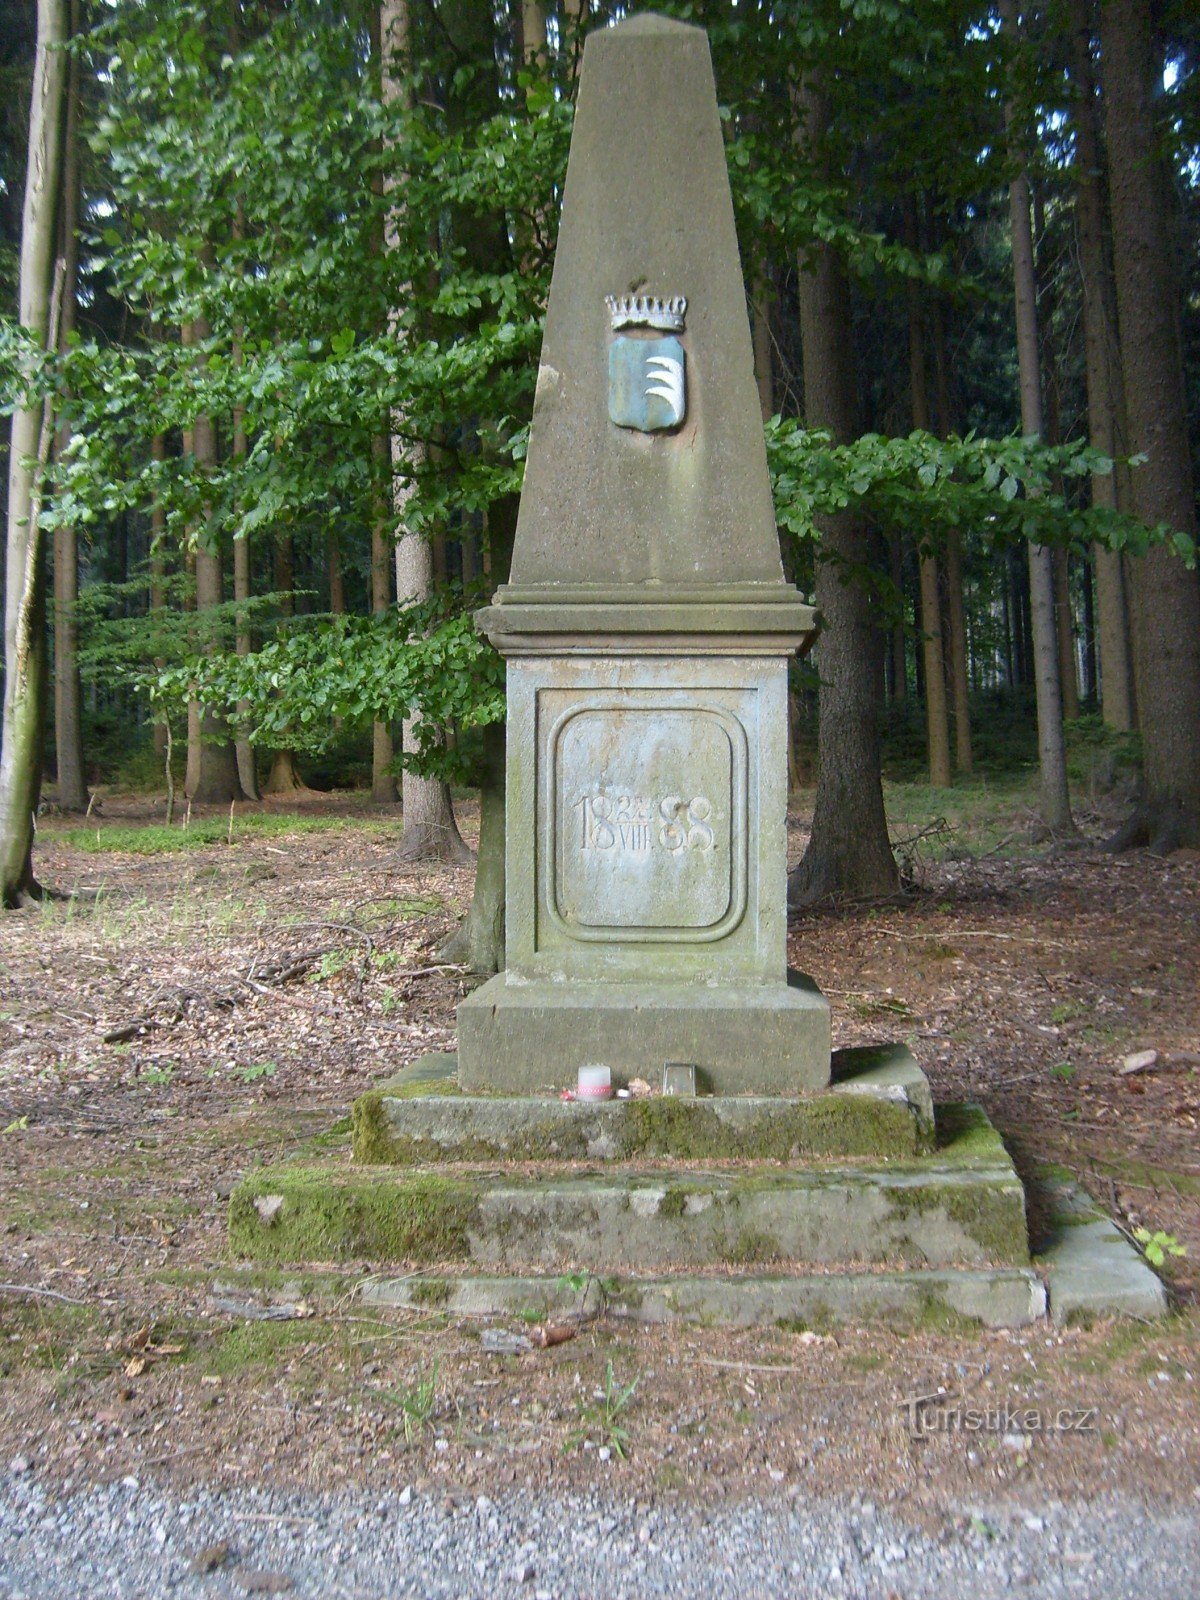 Đài tưởng niệm từ năm 1888 trong khu rừng gần làng Polom